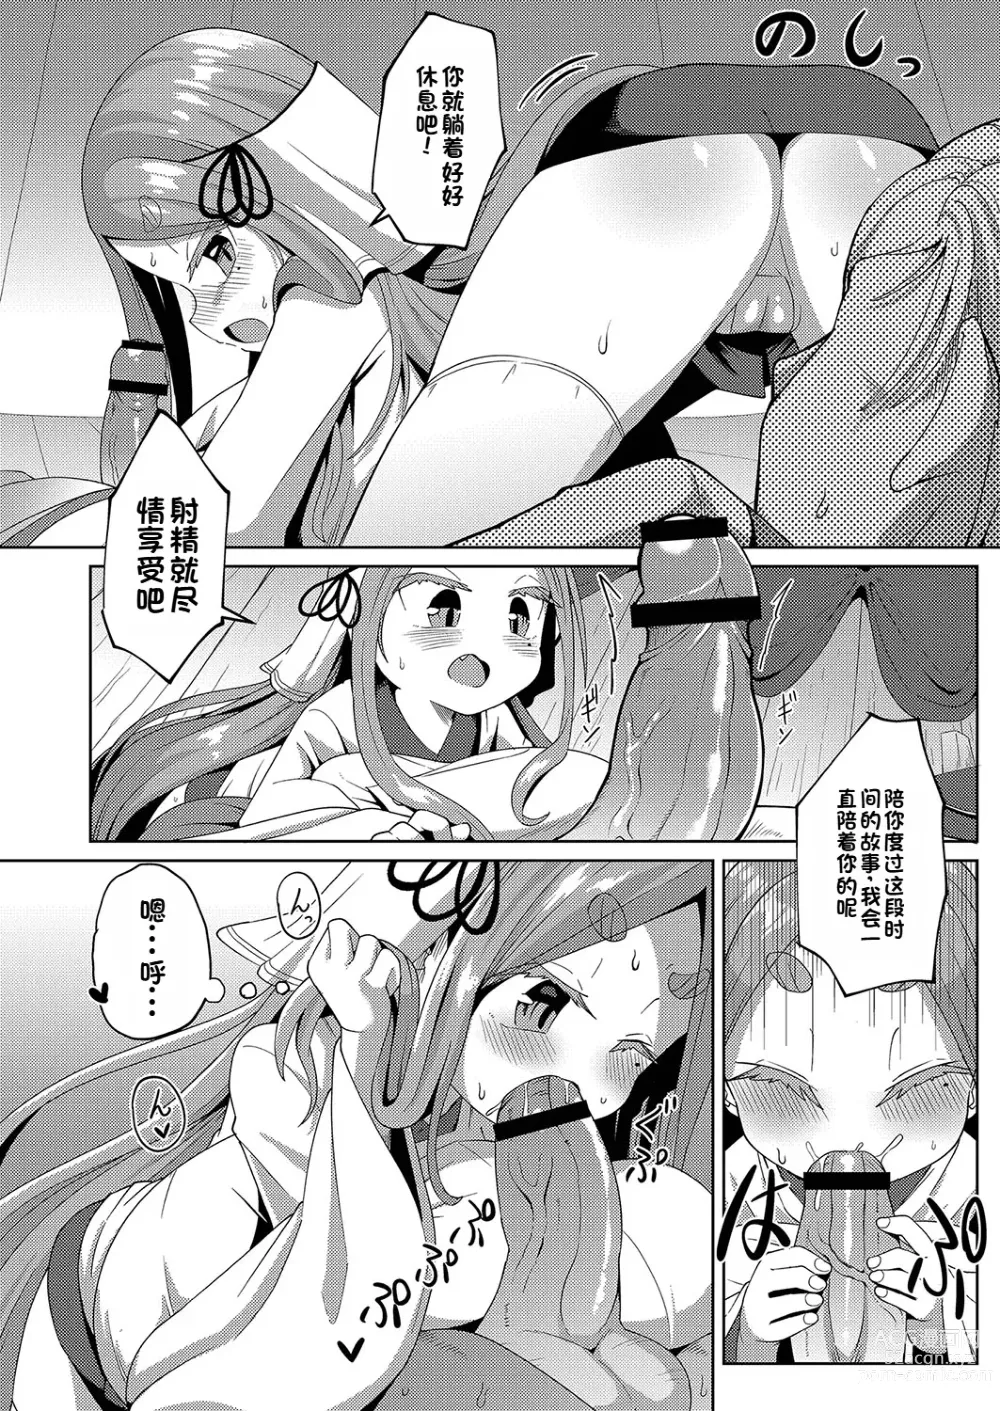 Page 12 of manga Yui